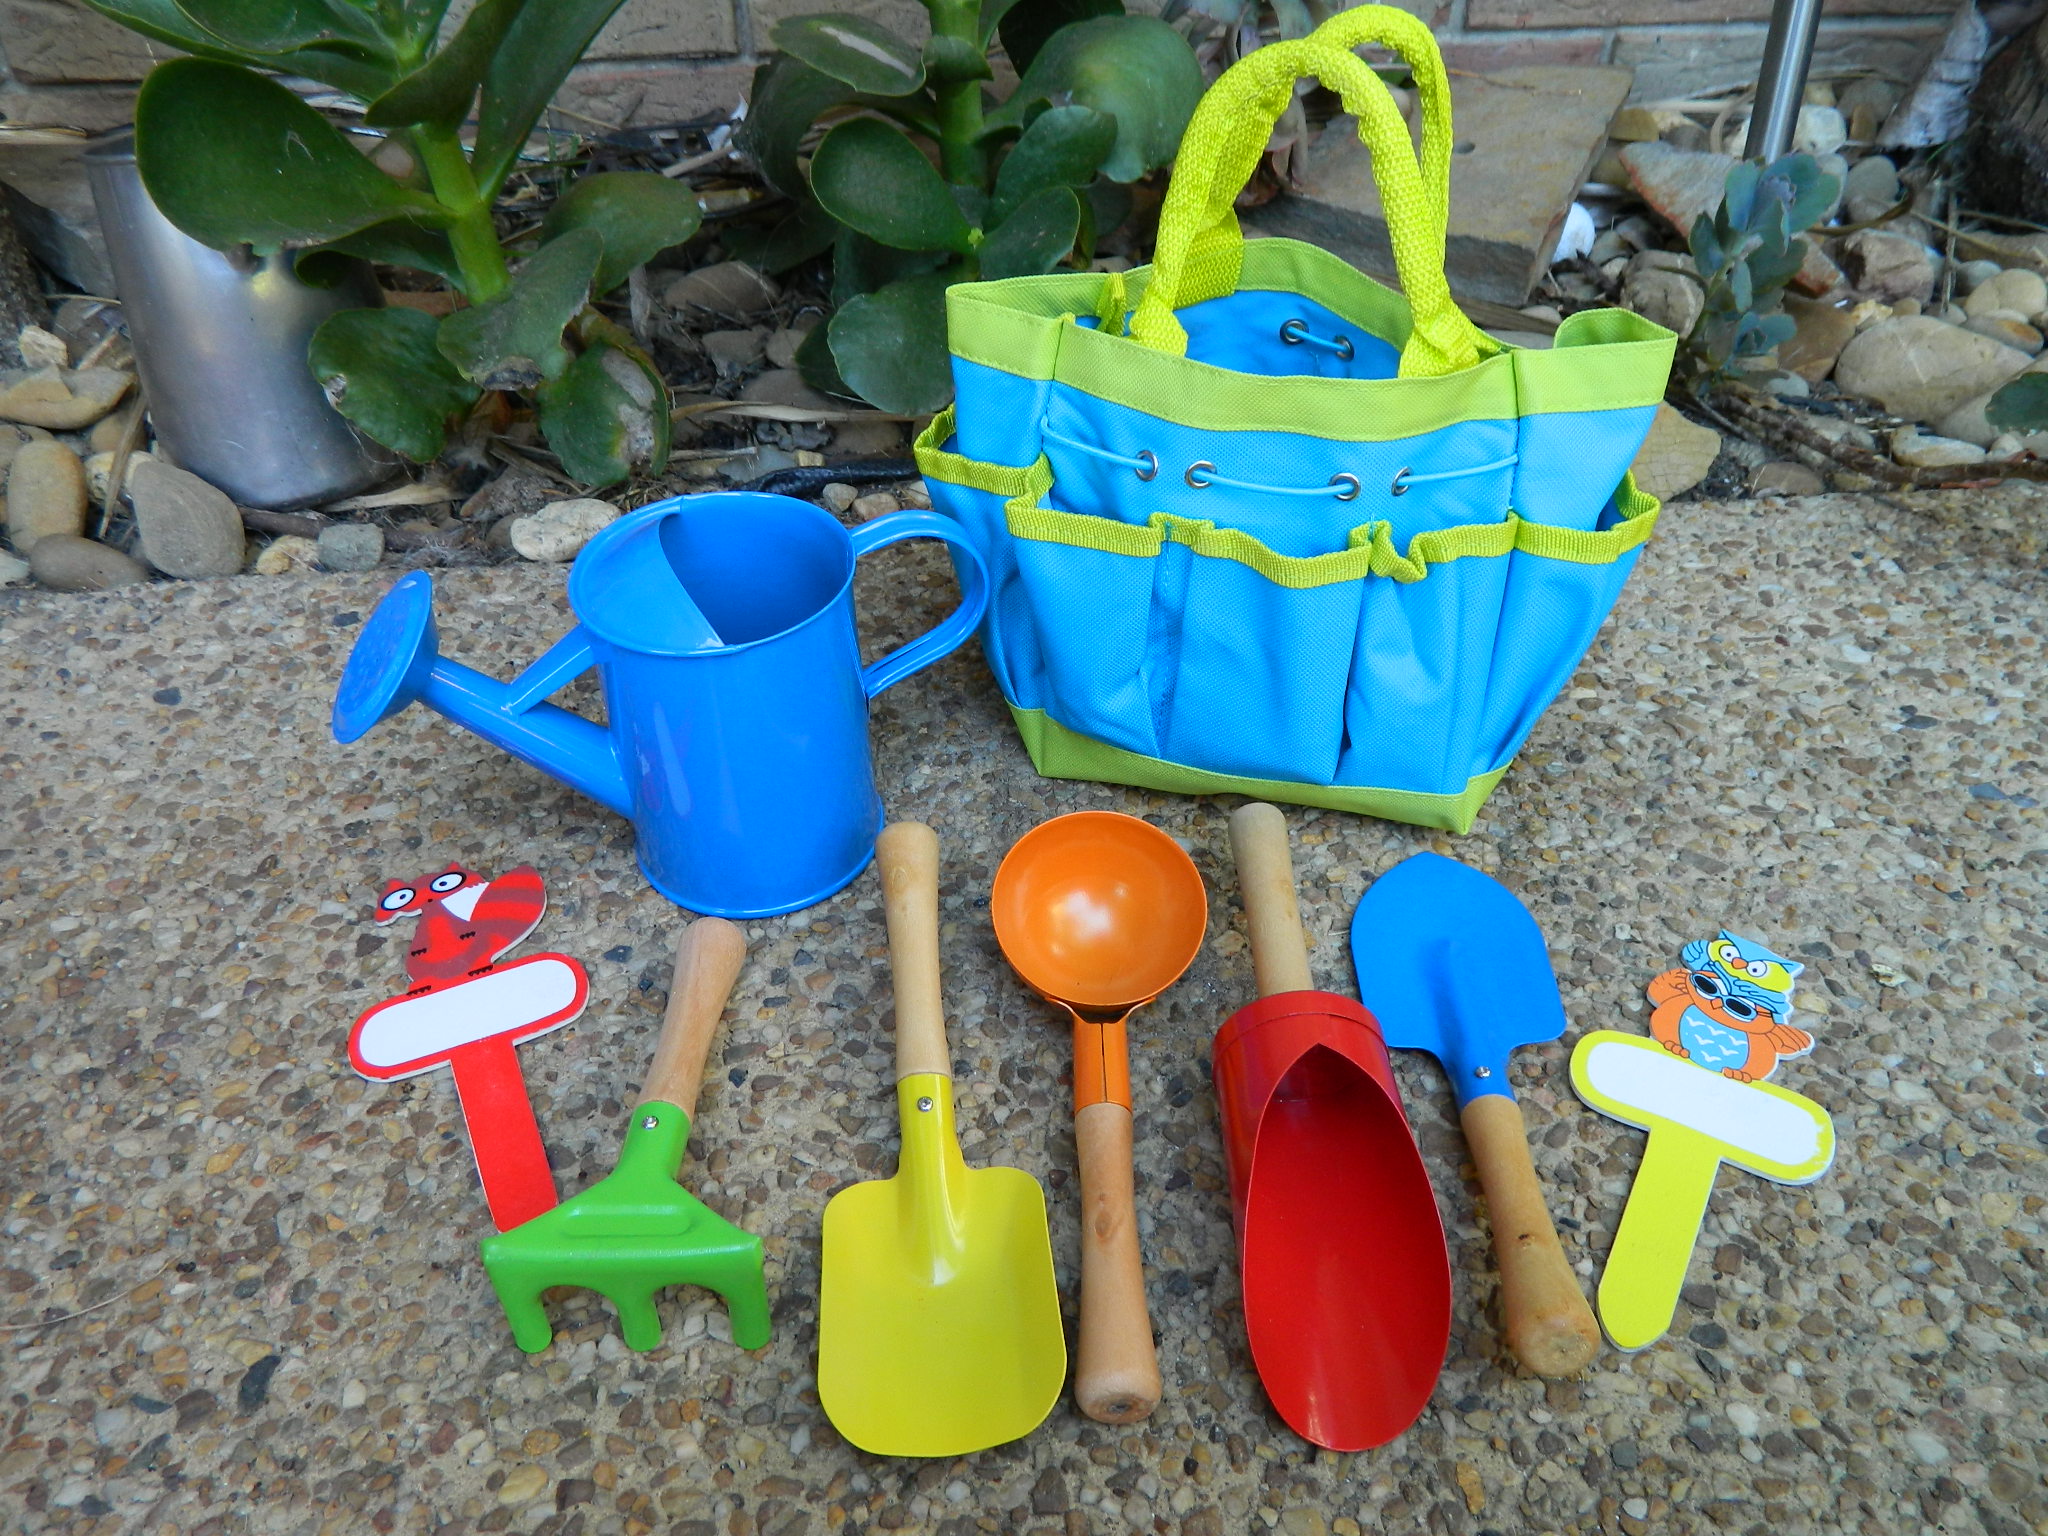 NEW Bella & Ben kids garden bag watering can & tool set 